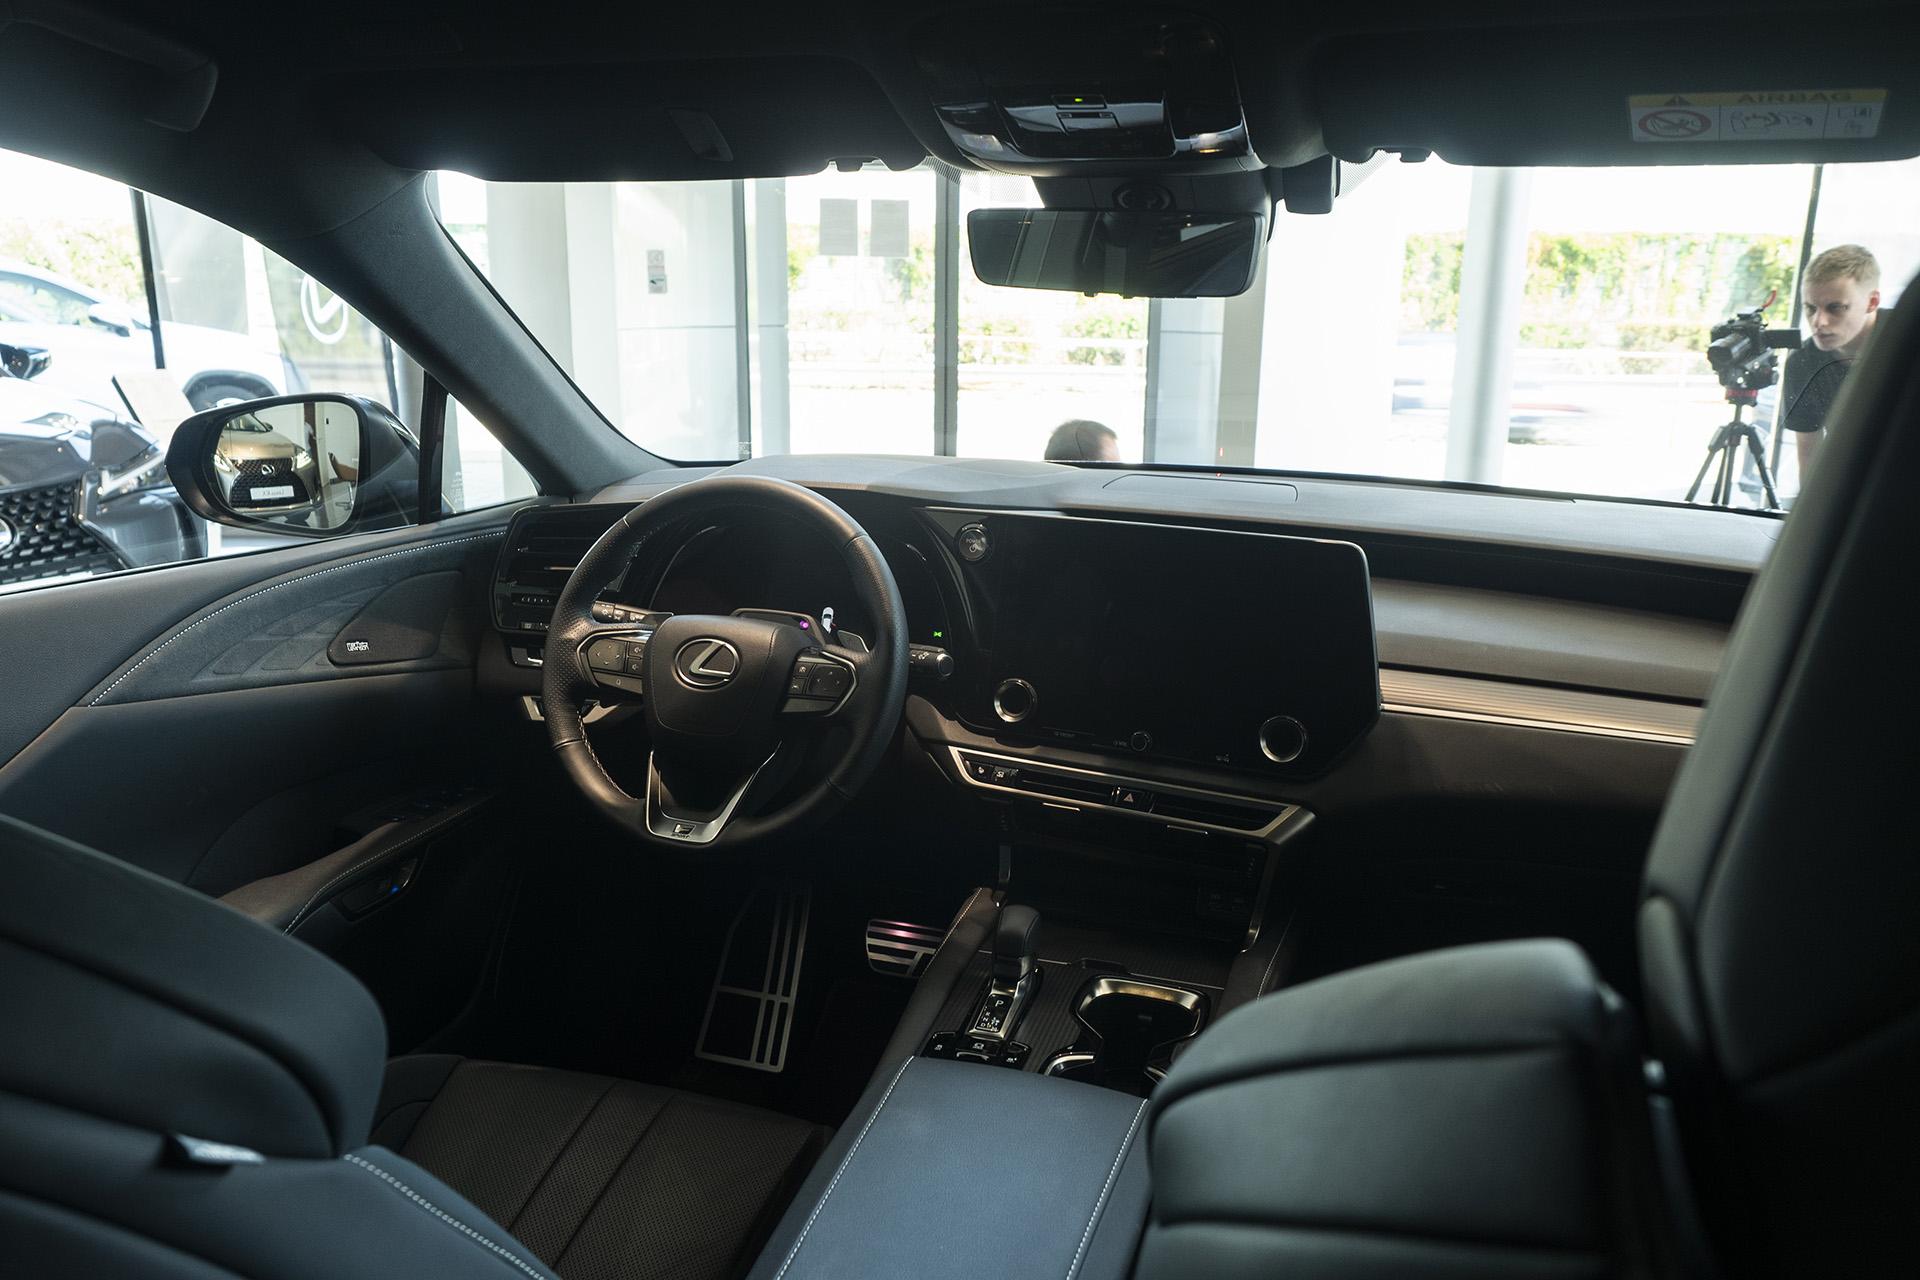 Pozreli sme si naživo štvrtú generáciu Lexusu RX, konkrétne Lexus RX500h